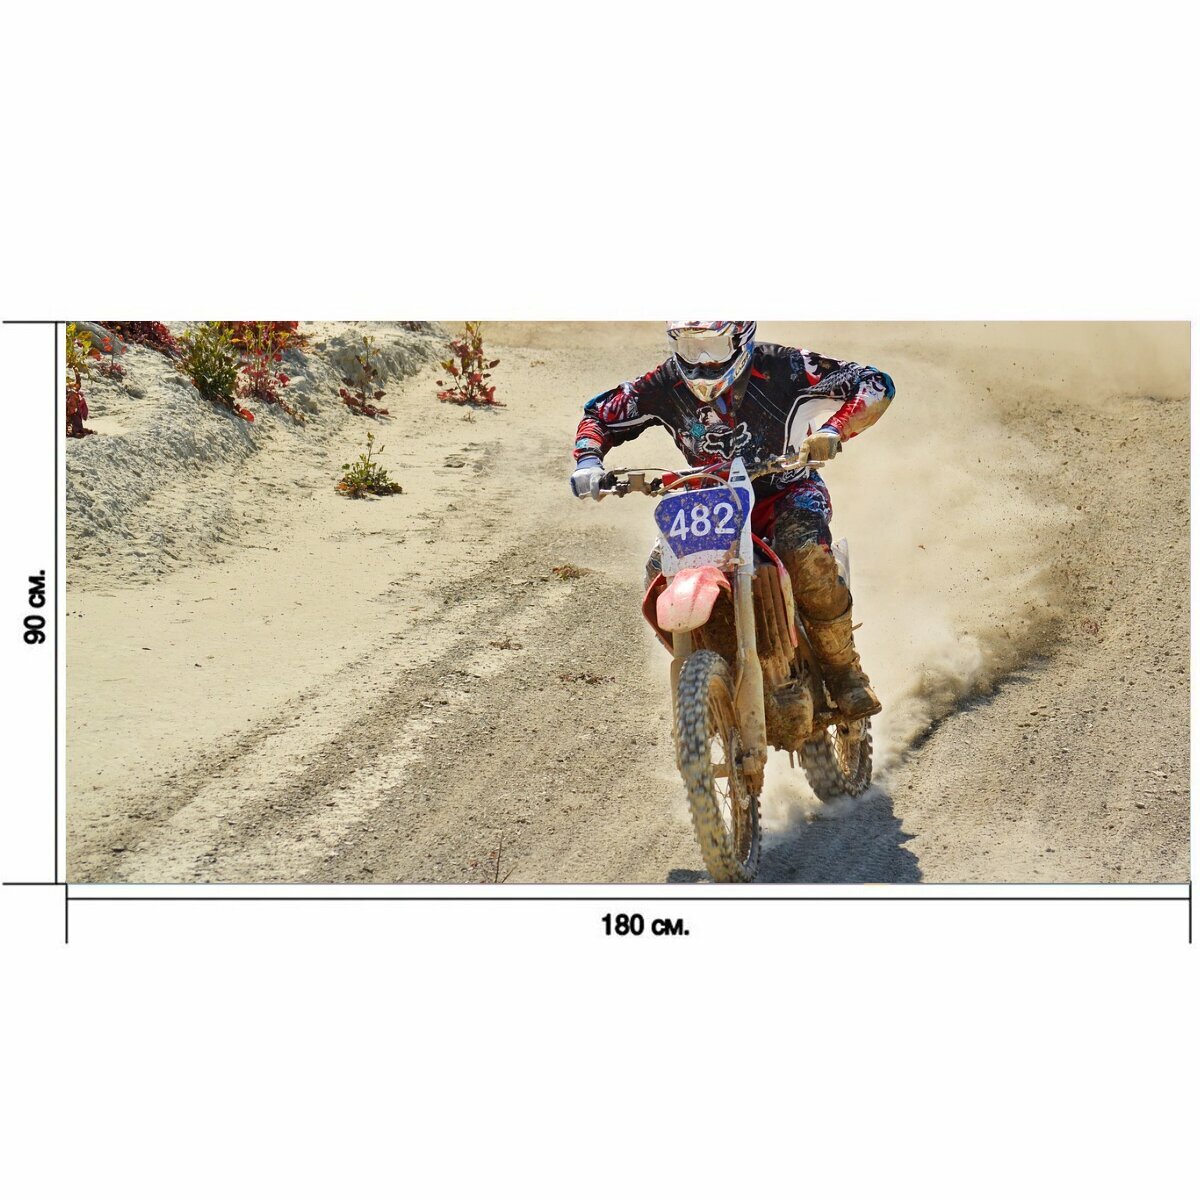 Большой постер "Велосипед грязи, мотокросс райдер, карабкаться" 180 x 90 см. для интерьера